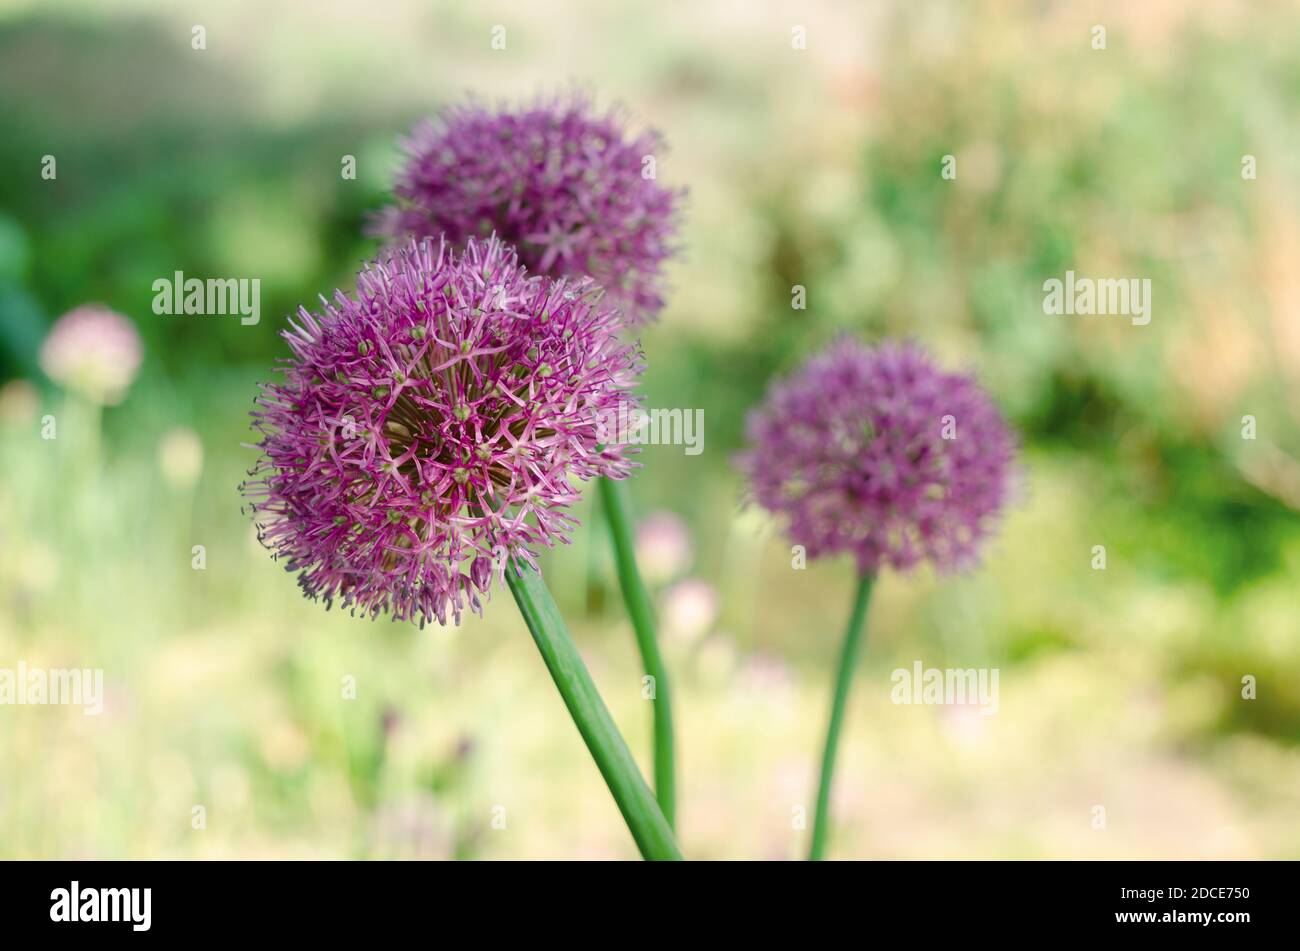 Lila Allium lucy Ball Blumen Feld. Frühling Garten Design mit mehrjährigen  violetten Pflanzen Stockfotografie - Alamy